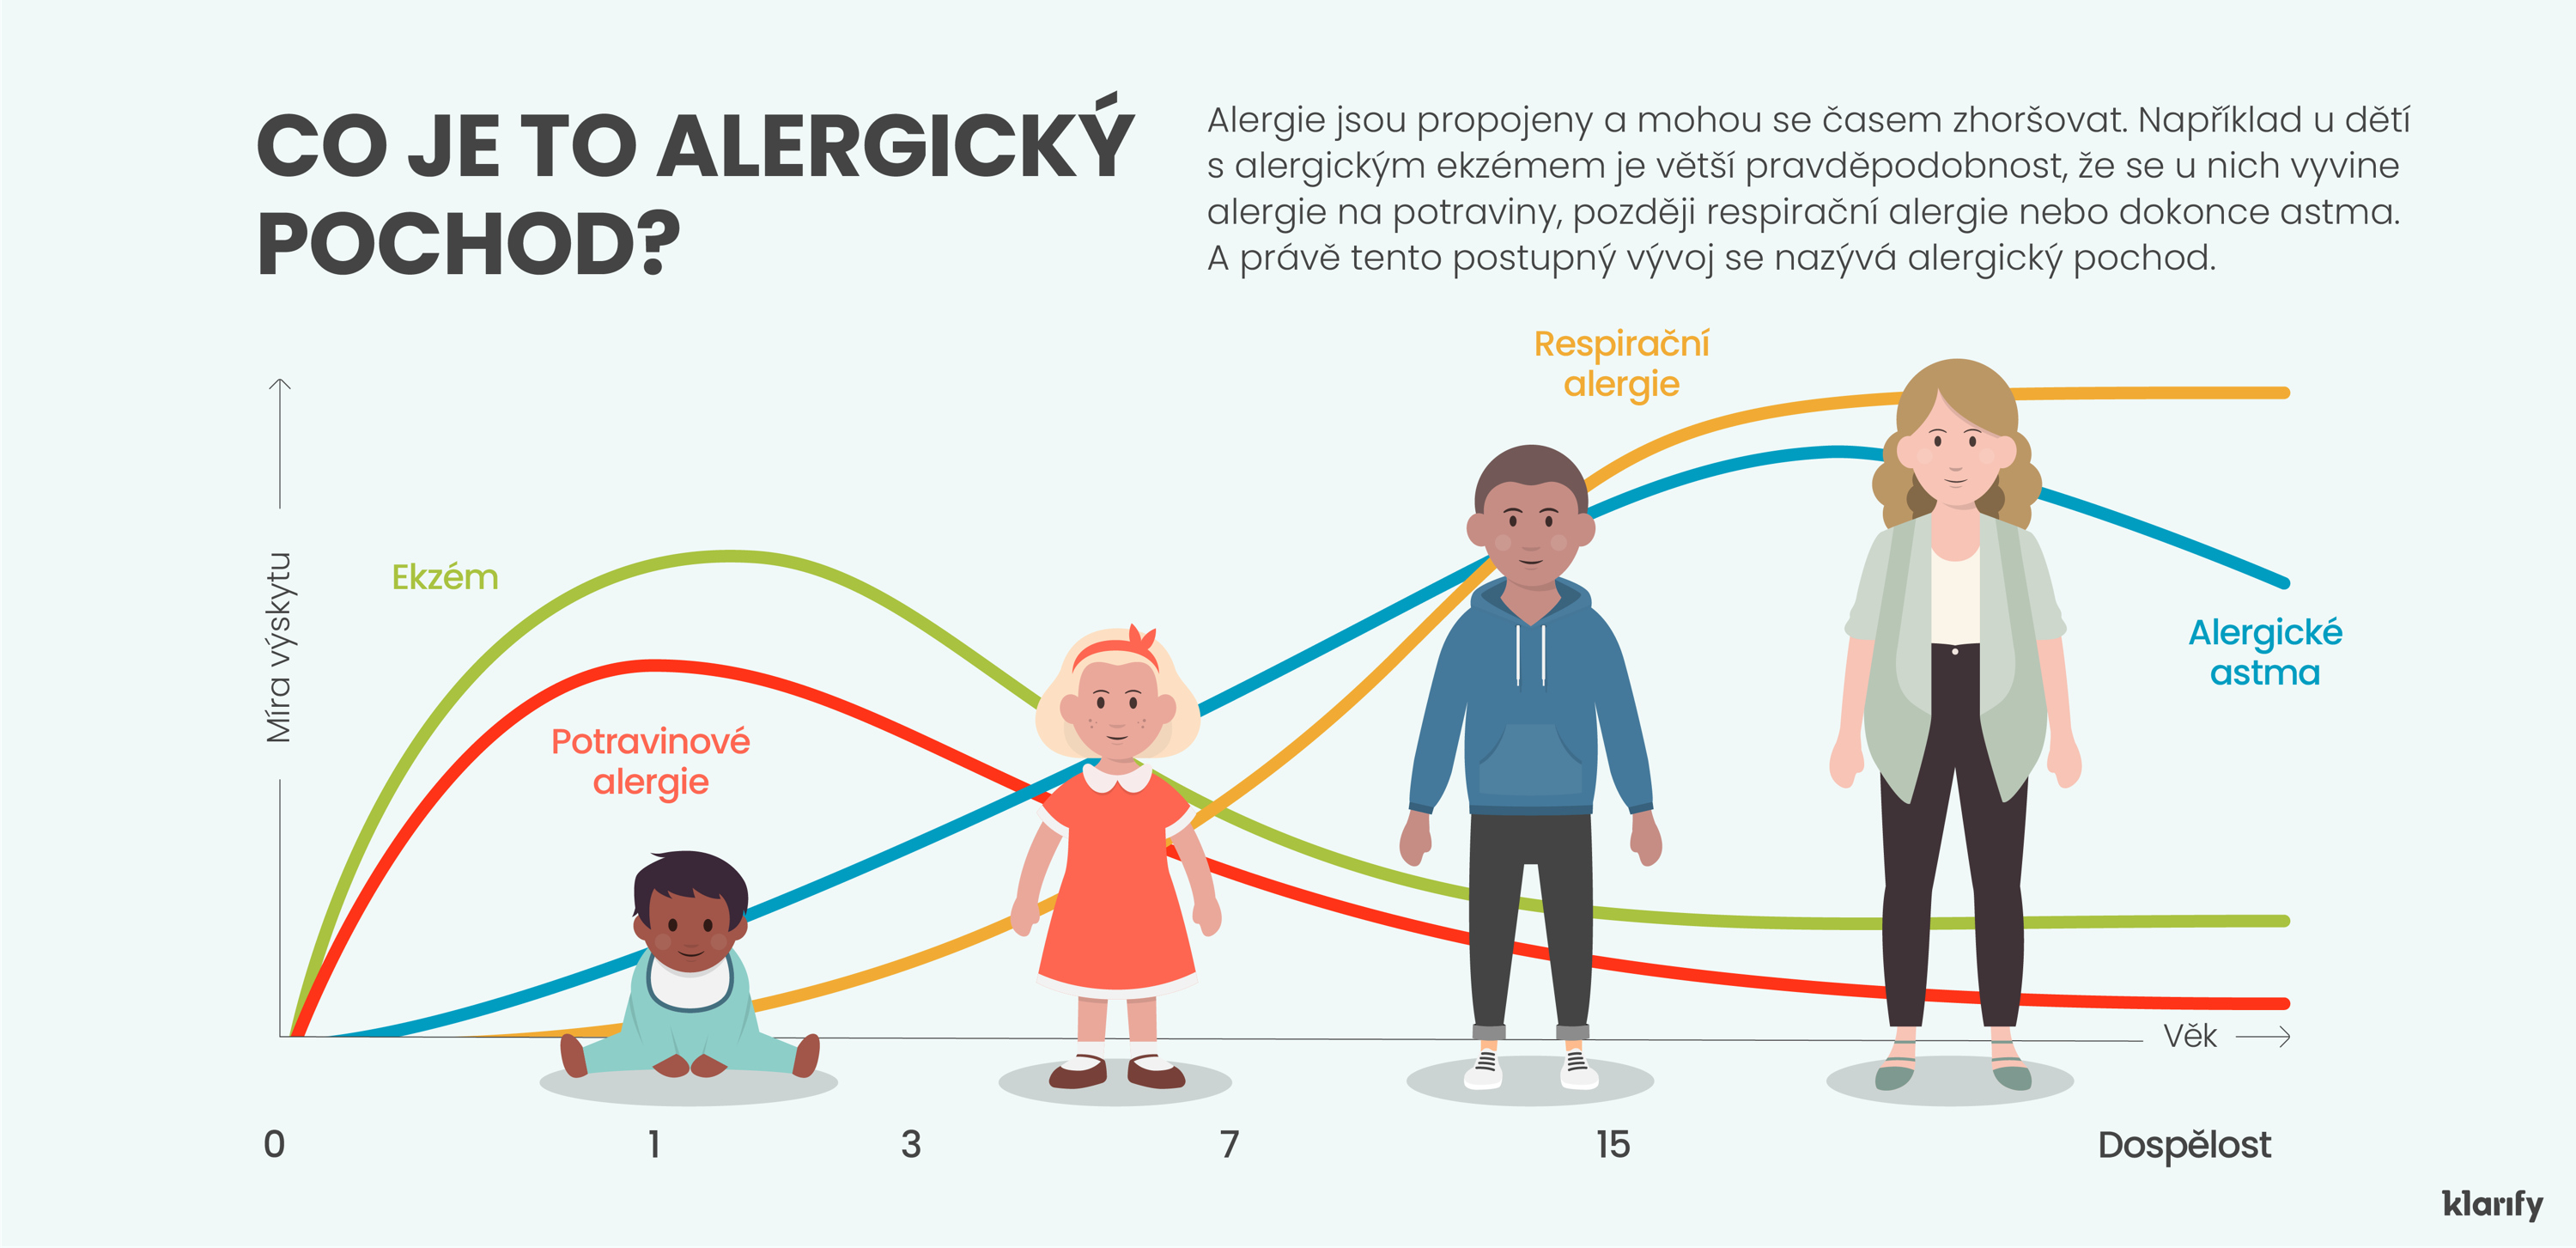 Infografika s vysvětlením alergického pochodu, která popisuje, jak jsou alergické stavy propojeny a mohou se v průběhu času zhoršovat. Například děti s ekzémem mají větší pravděpodobnost, že se u nich vyvinou potravinové alergie, následně respirační alergie či dokonce astma.